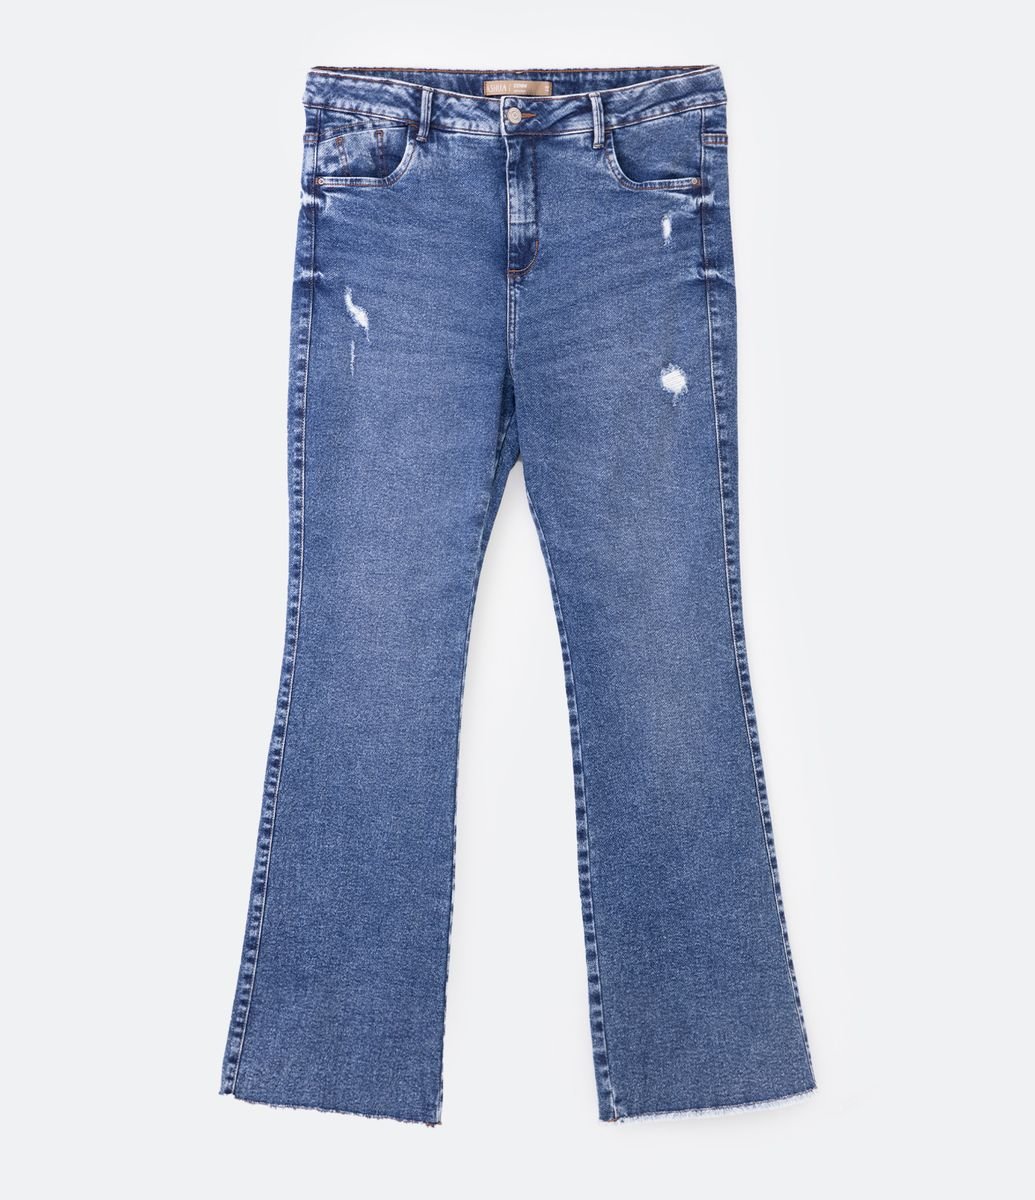 Calça Flare Jeans com Barra Desfeita Curve & Plus Size - Cor: Azul